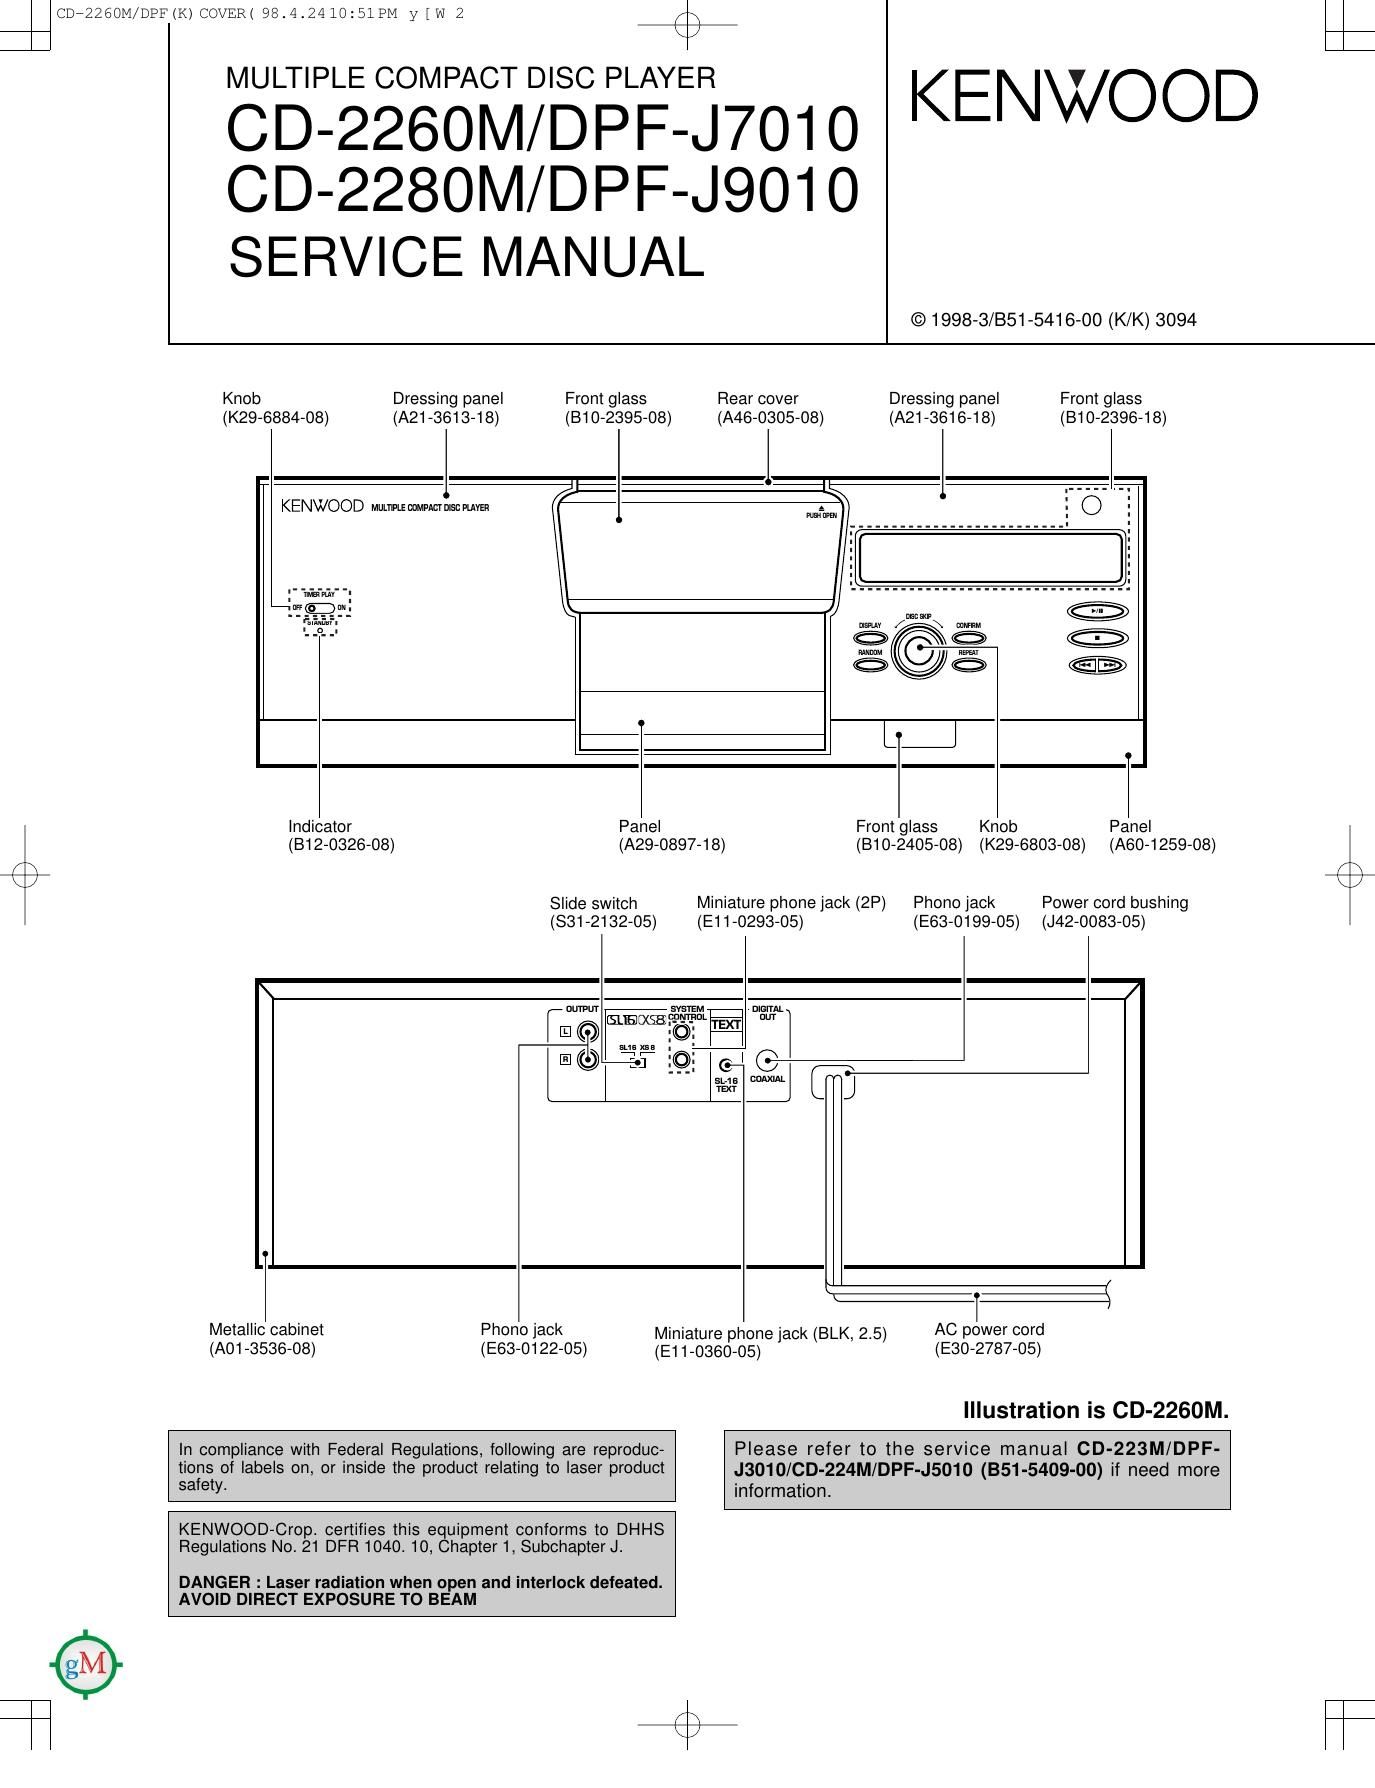 Kenwood CD 2280 M Service Manual